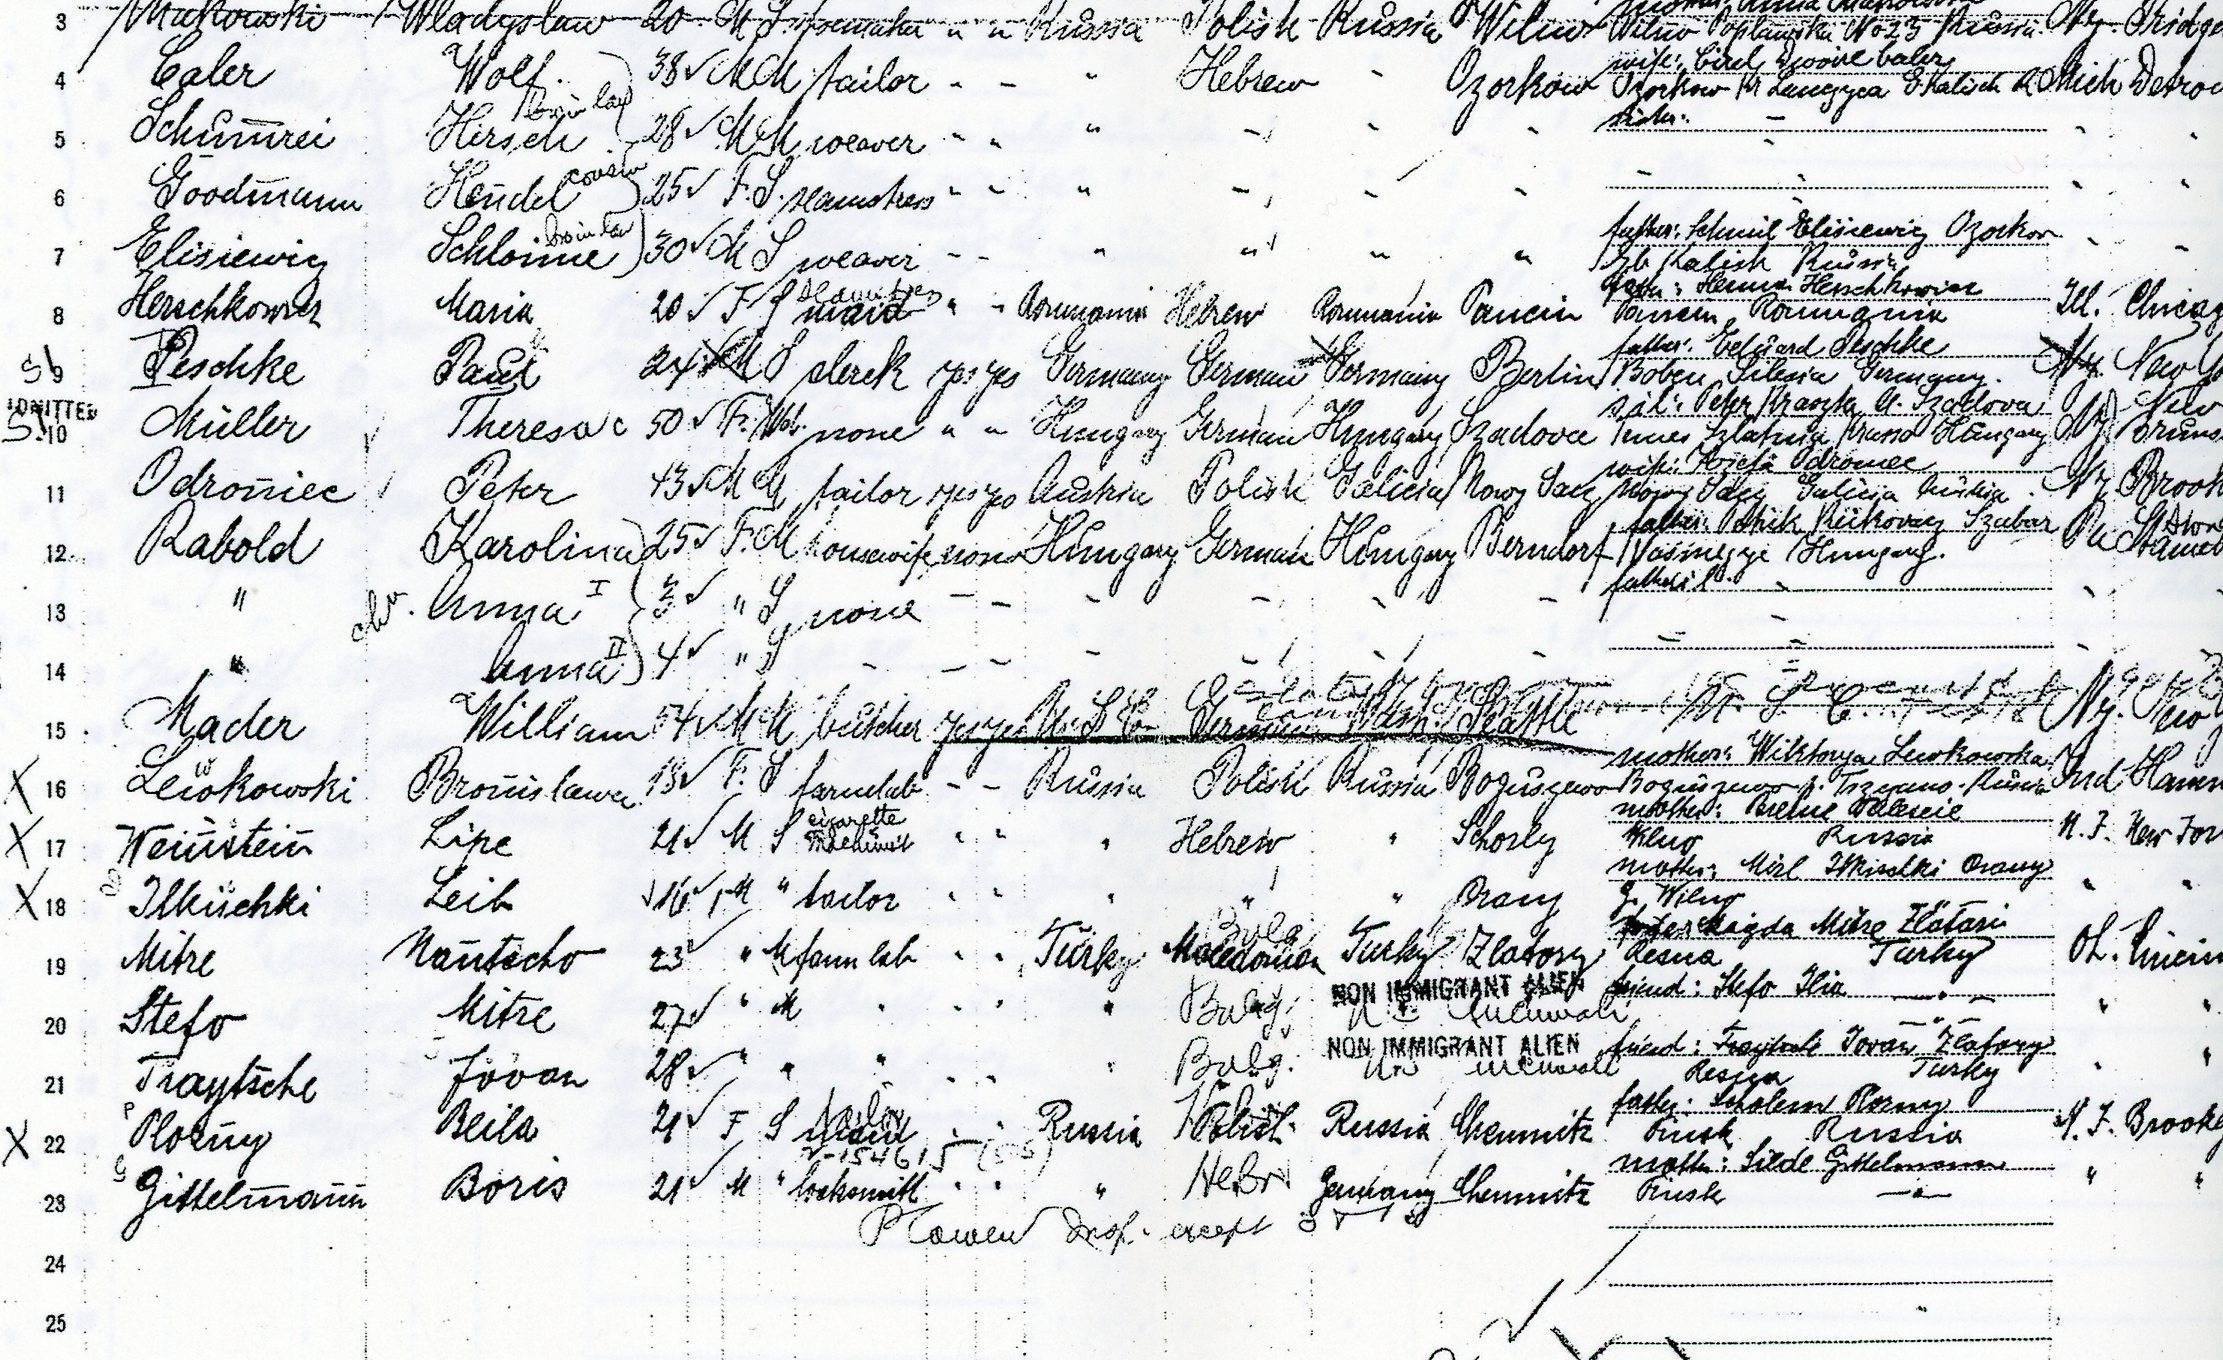 passenger list bernice lewkowski detail009.jpg